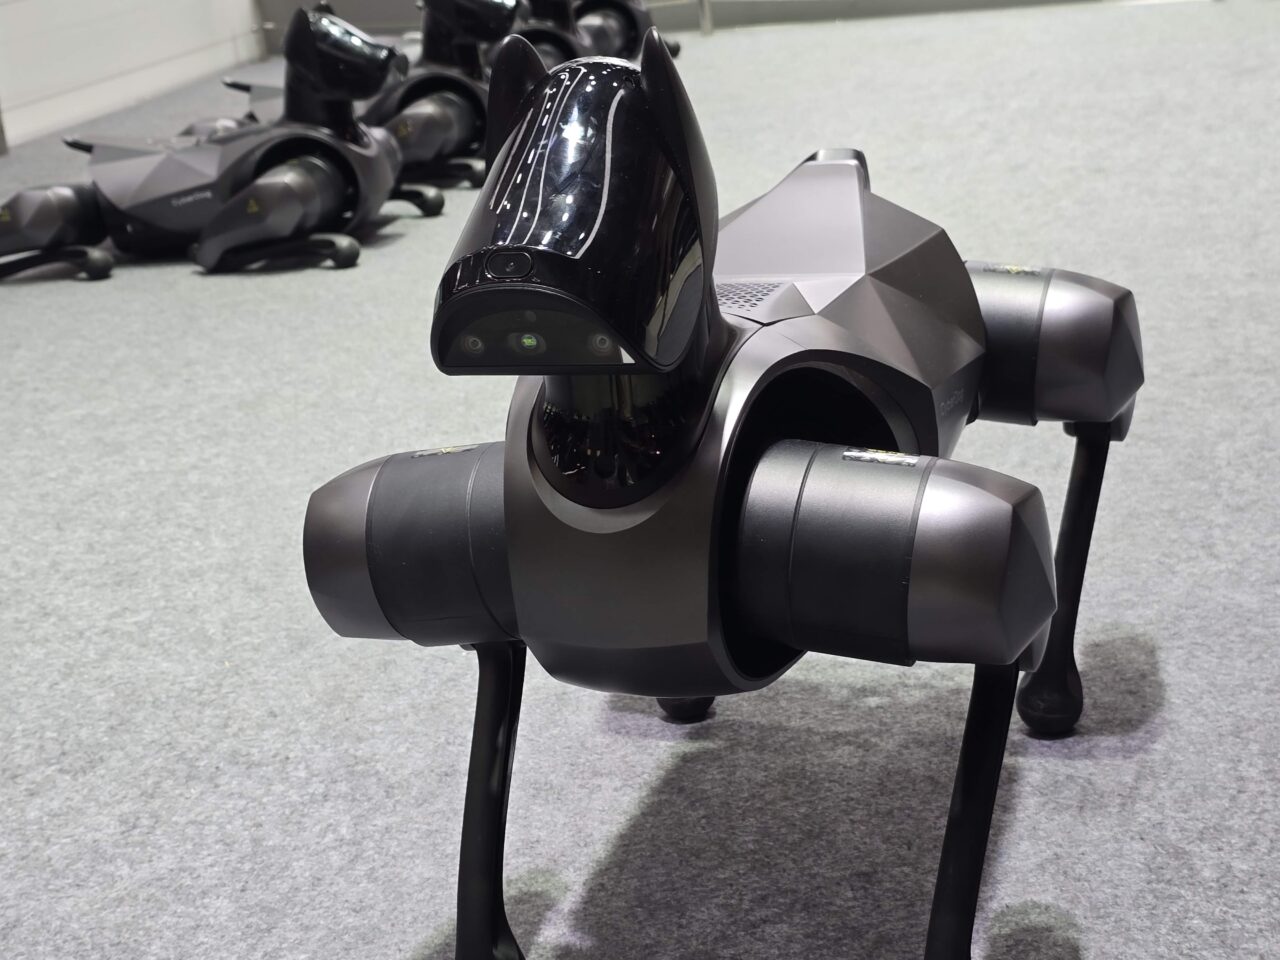 Czarno-szary robopies Xiaomi CyberDog 2 przypominający psa z "głową" wyposażoną w sensory i kamery, stojący na wystawie, z rozmazanymi robotami w tle.